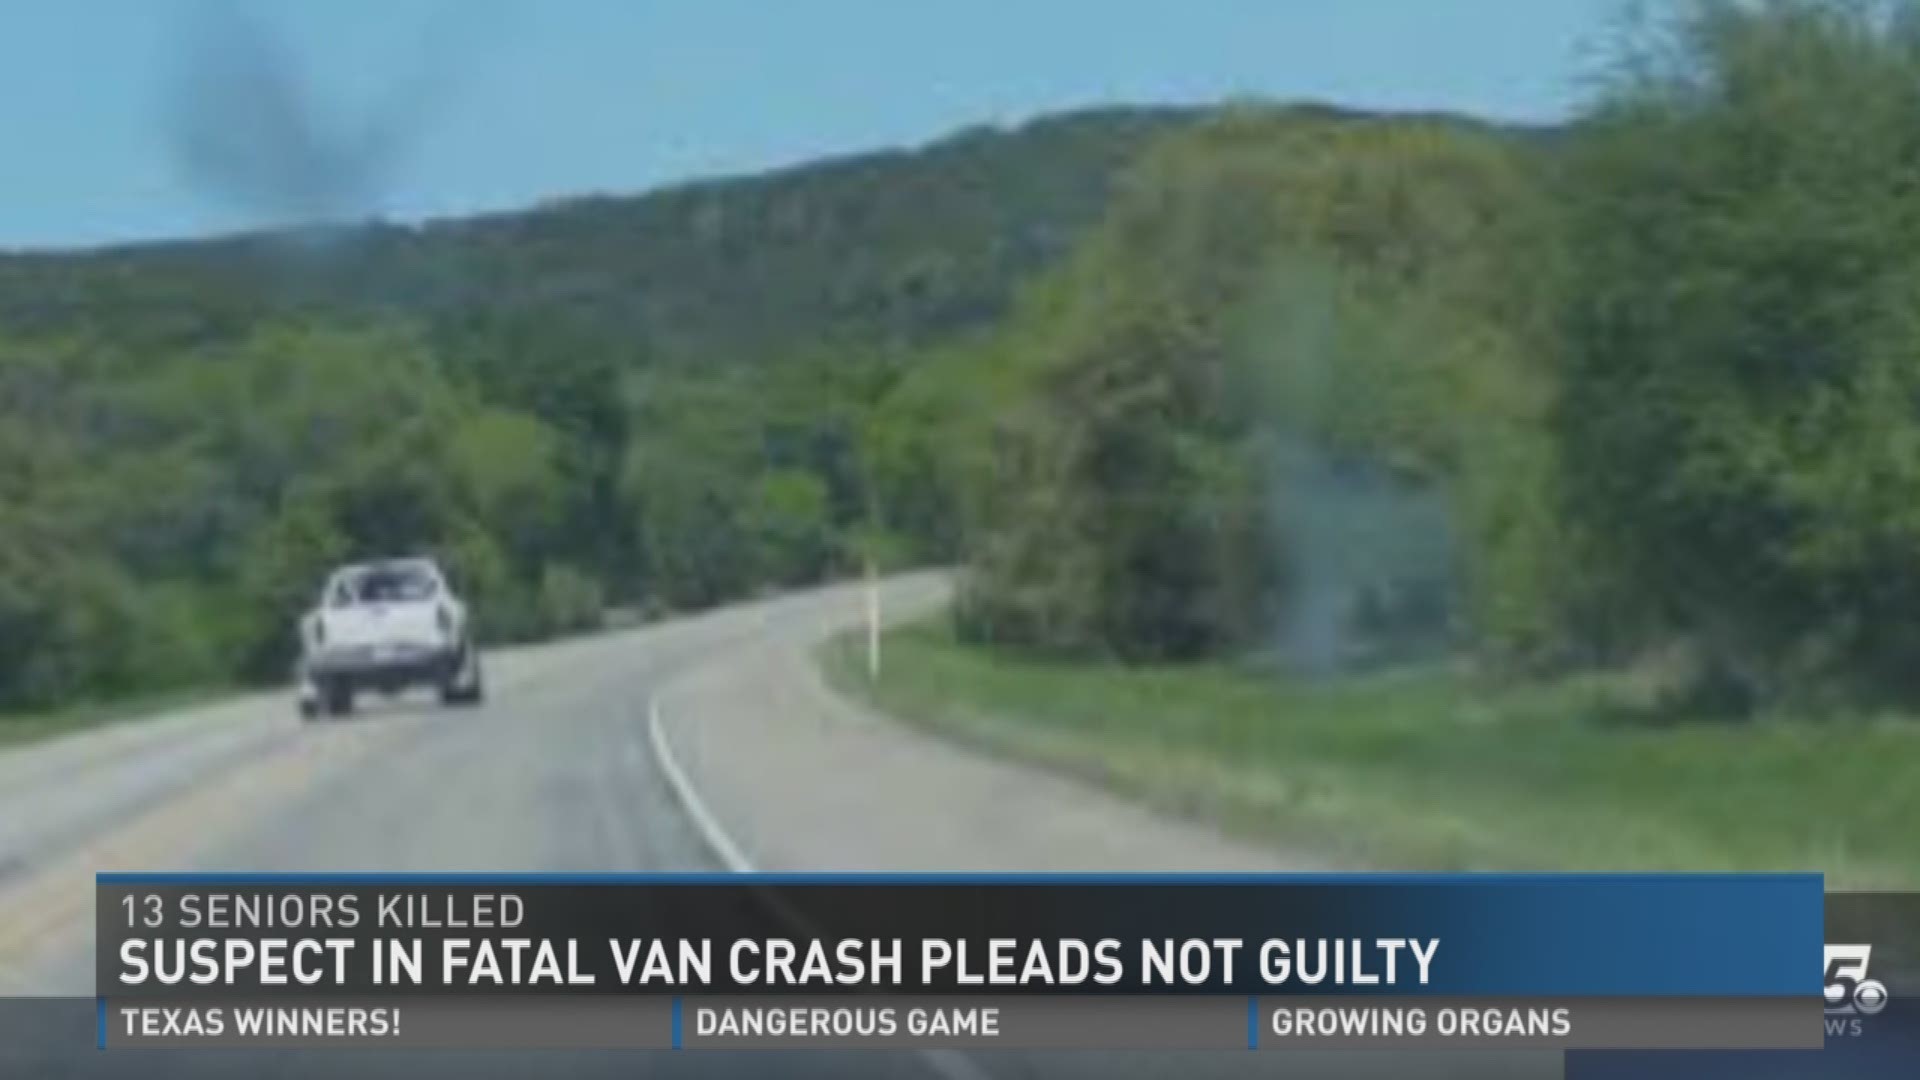 Driver in fatal van crash pleads not guilty